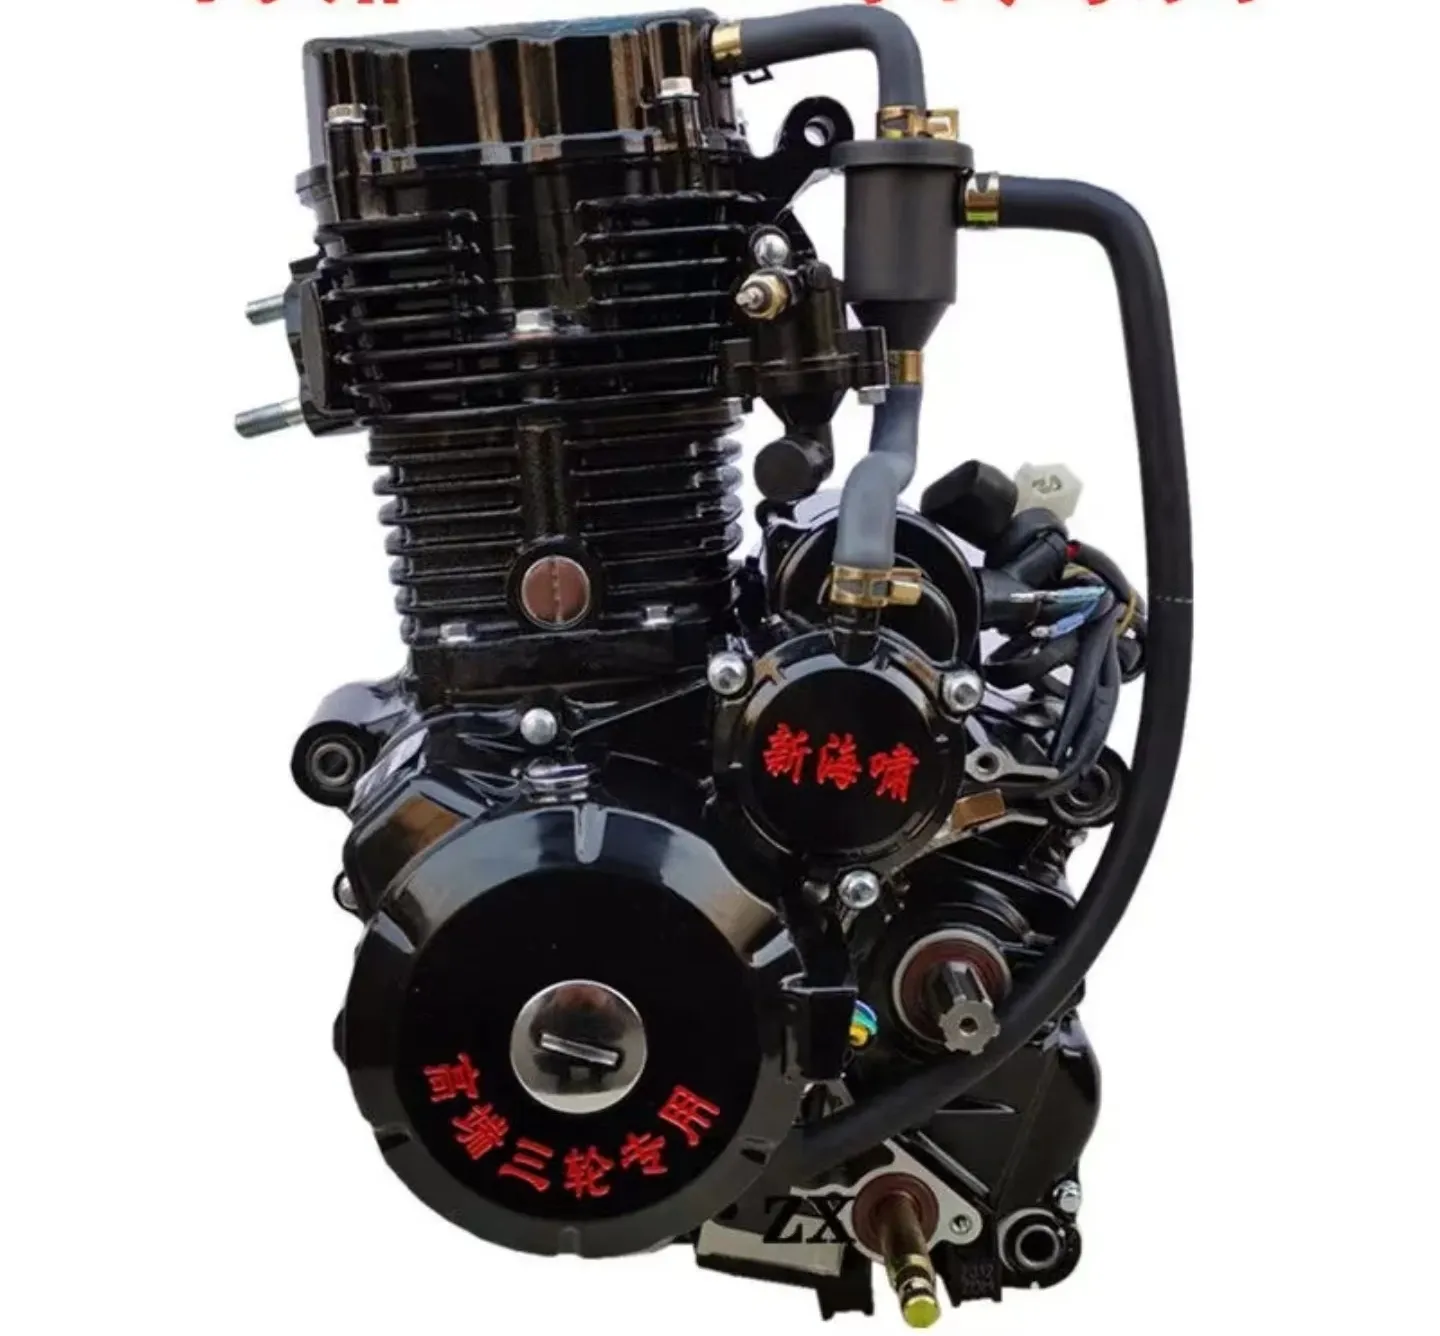 Скутер engineCQJB Haixiao 200 высококлассный двигатель с жидкостным охлаждением для двухколесных/трехколесных мотоциклов и картов